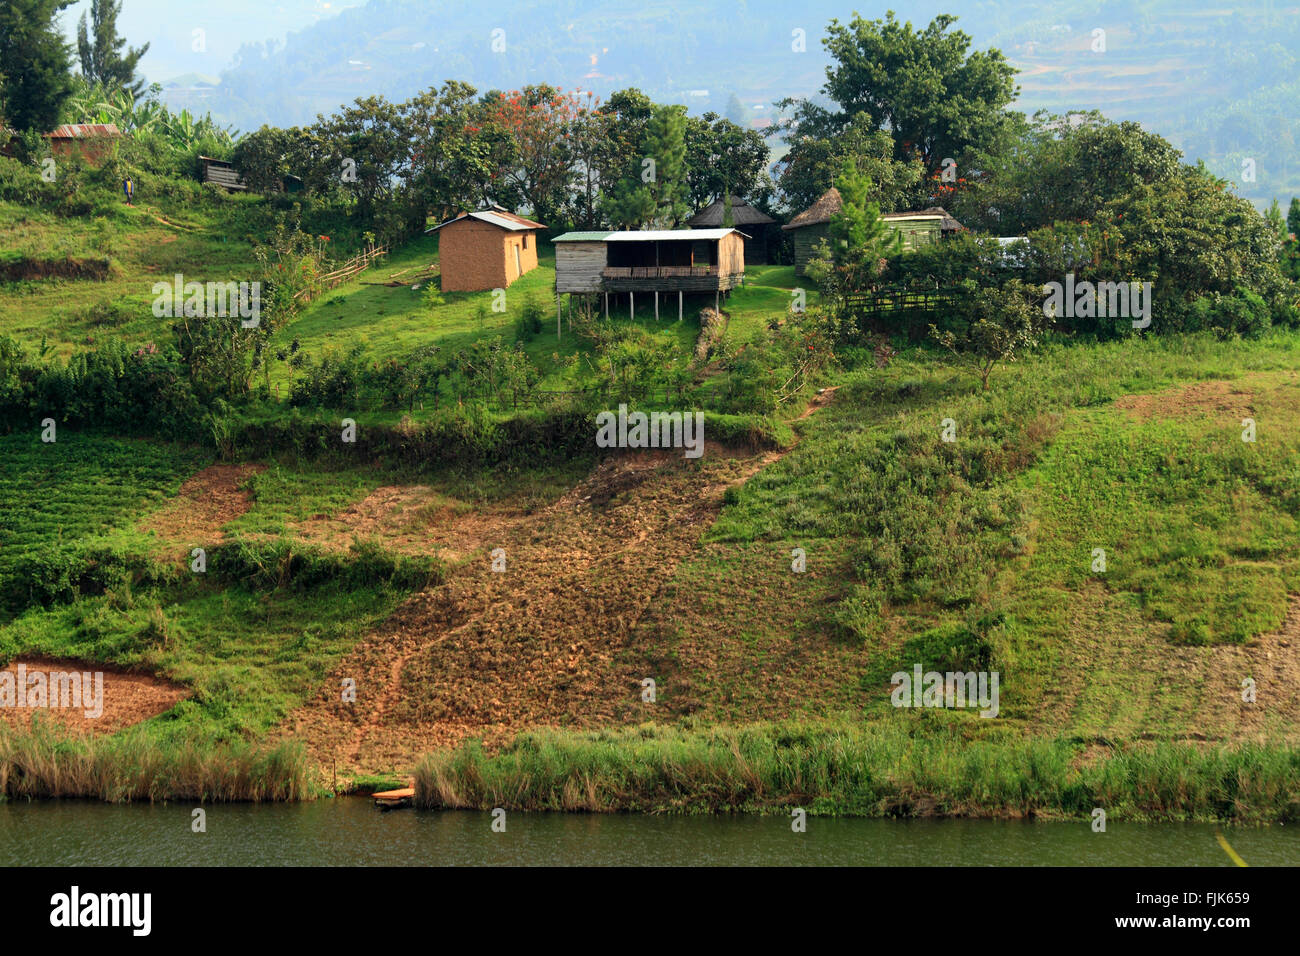 A small rural farm located on Lake Bunyoni in Uganda. Stock Photo